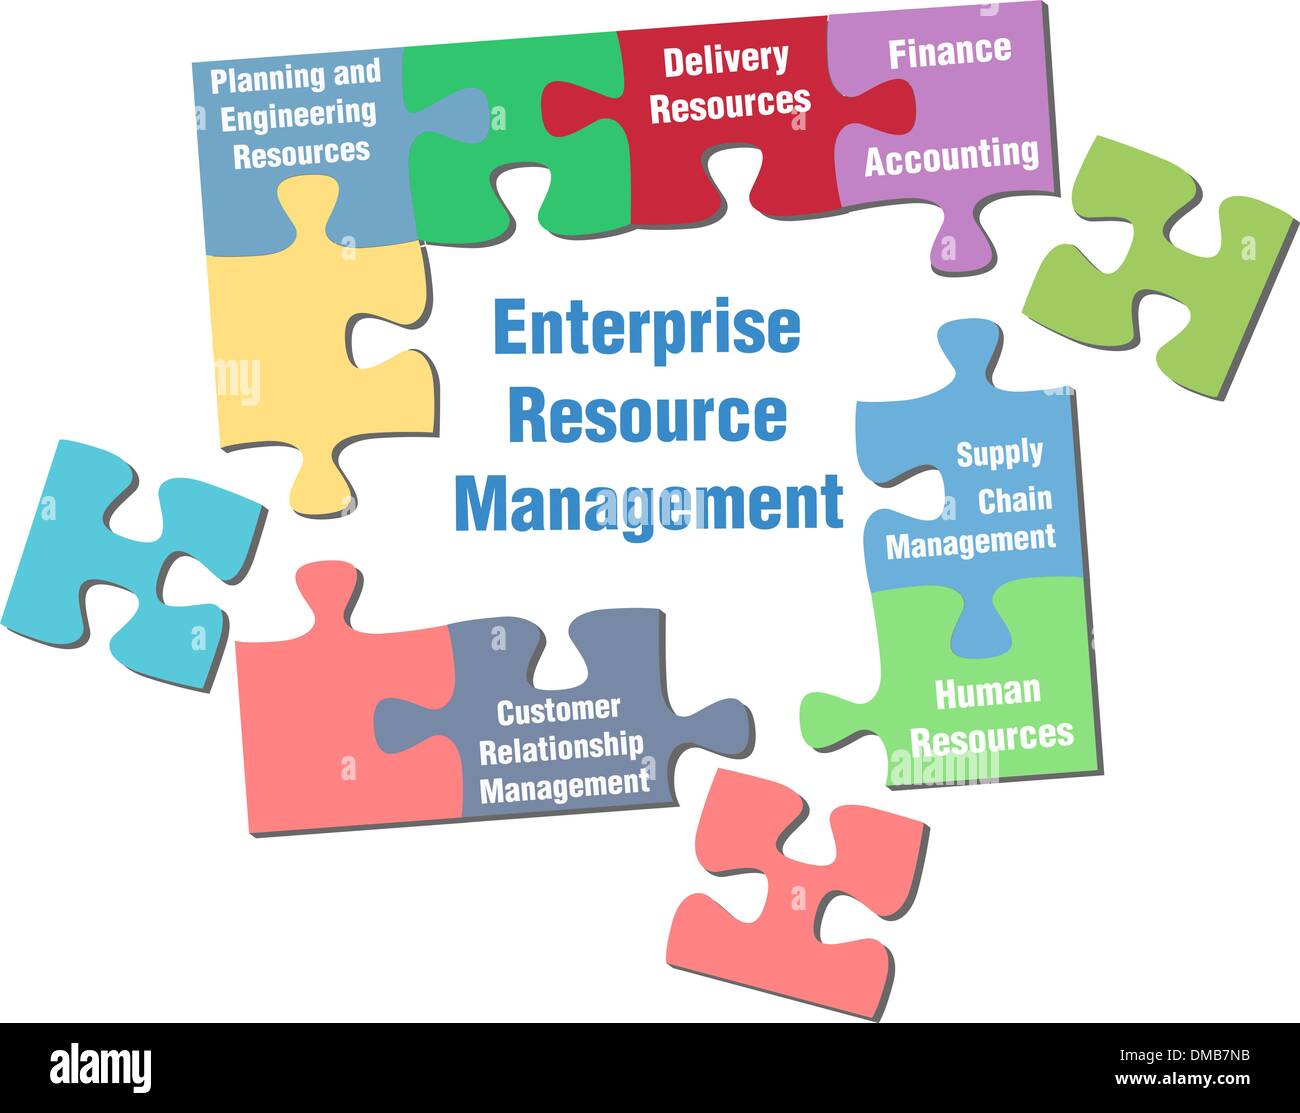 Enterprise Resource Management puzzle solution Stock Vector